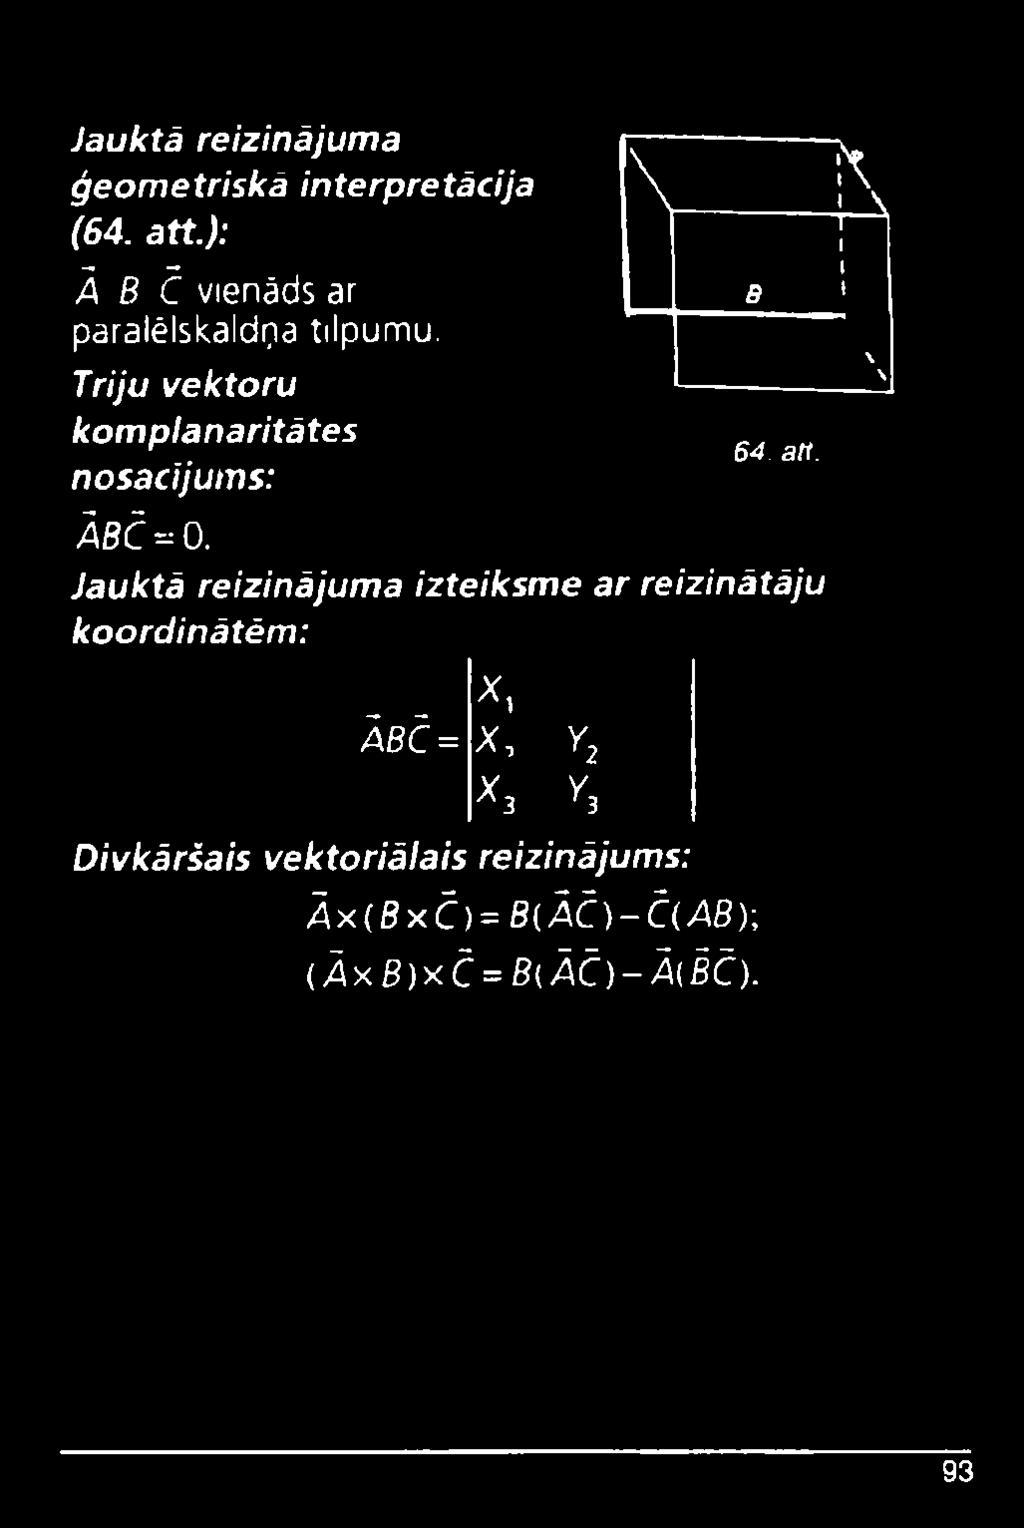 Triju vektoru komplanaritātes nosacījums: ĀBČ^O.